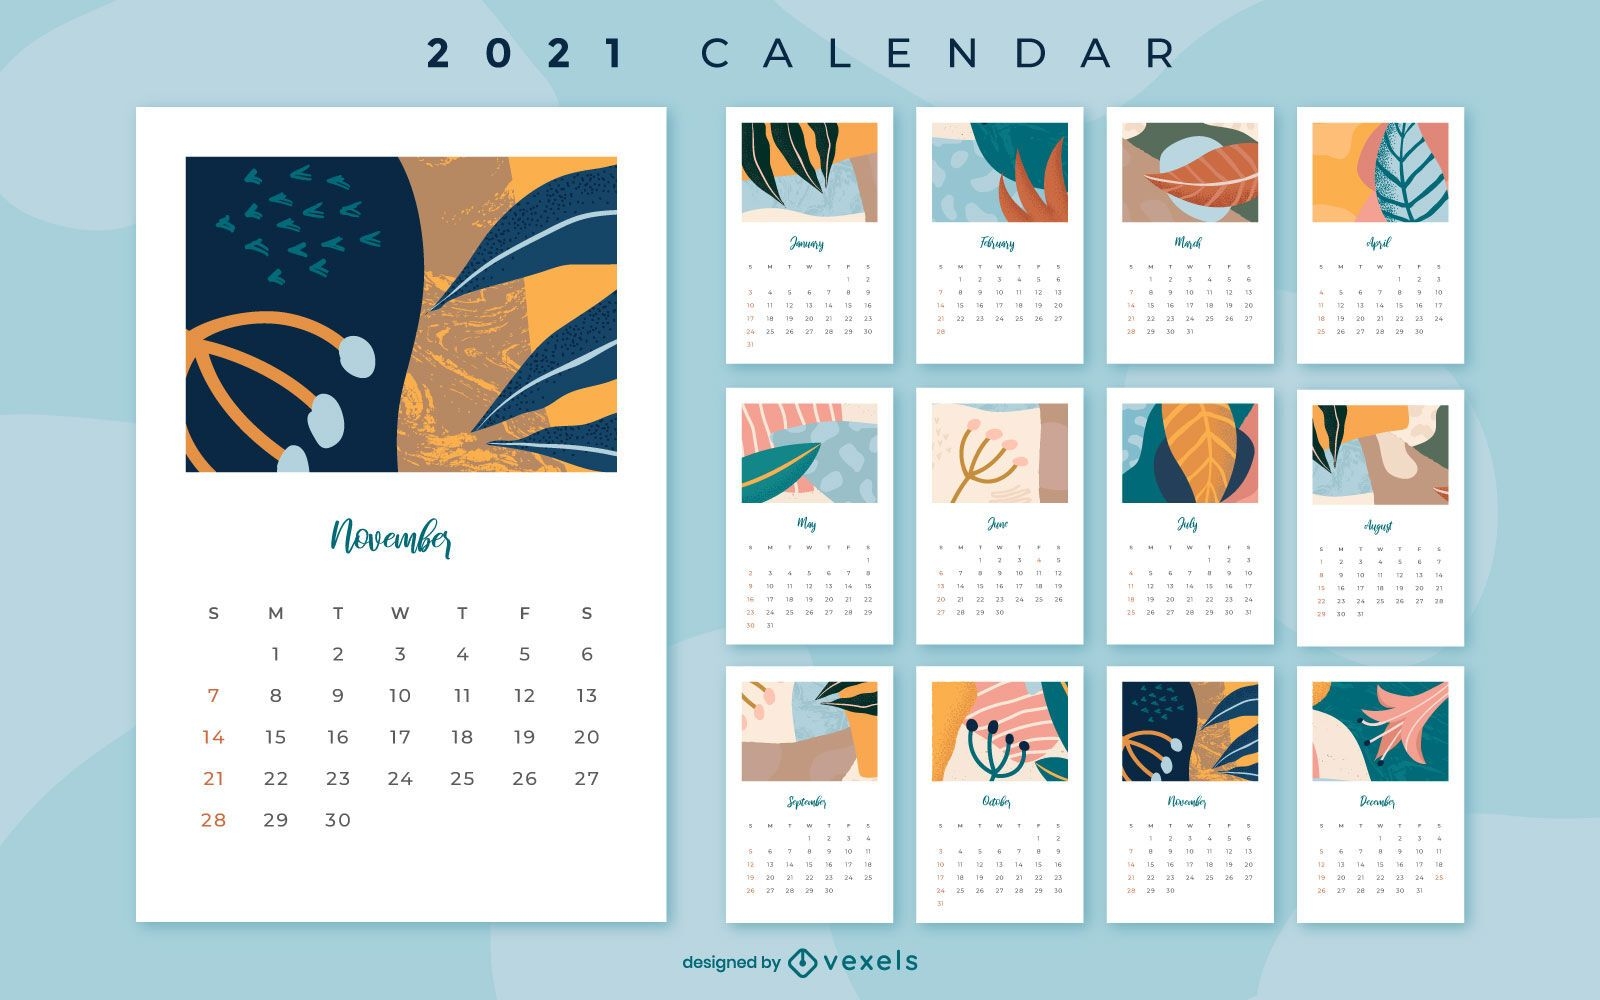 Diseño floral abstracto del calendario 2021